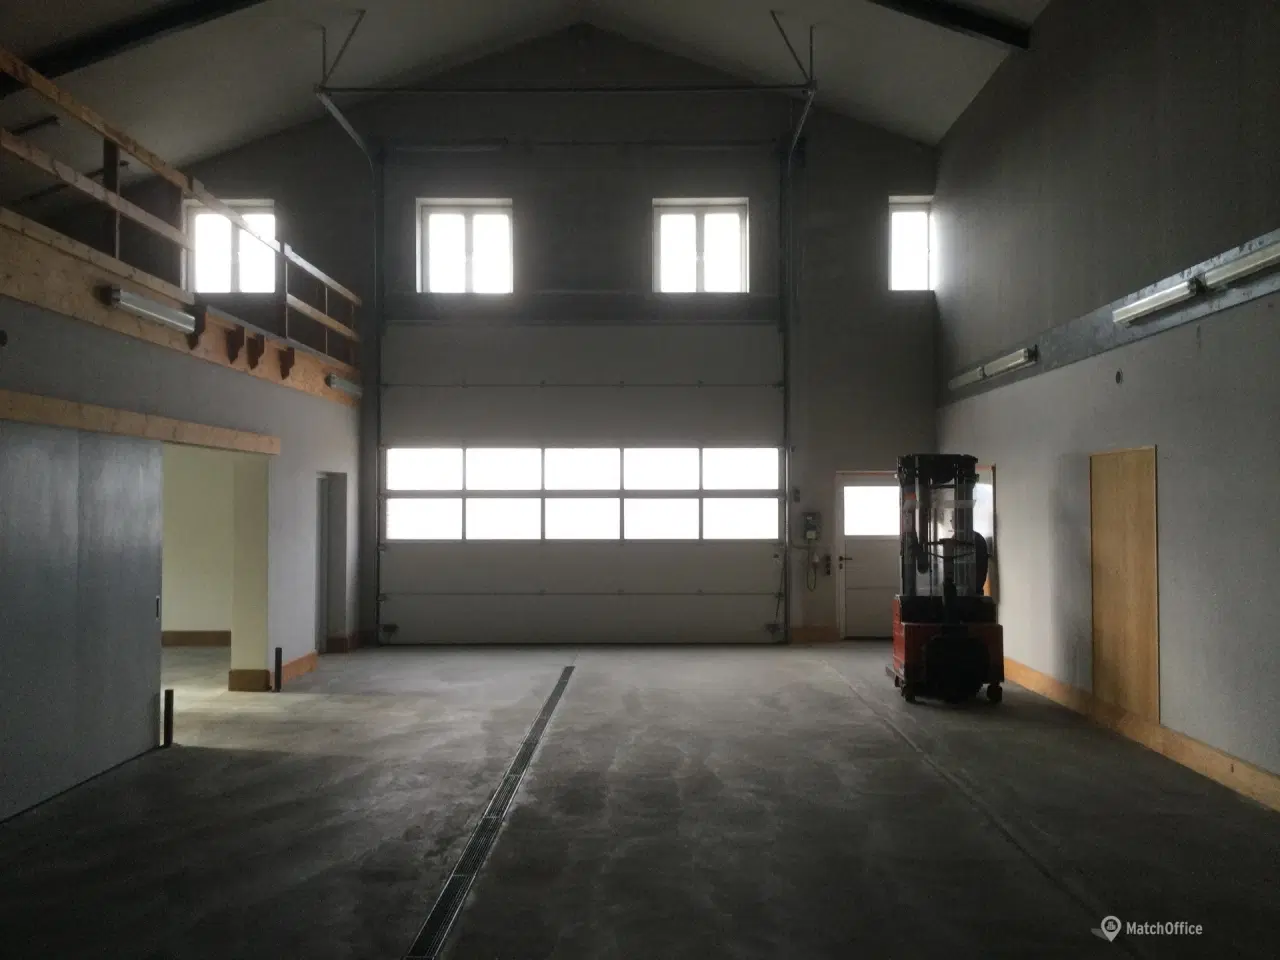 Billede 2 - lagerlokaler beliggende i rolige omgivelser